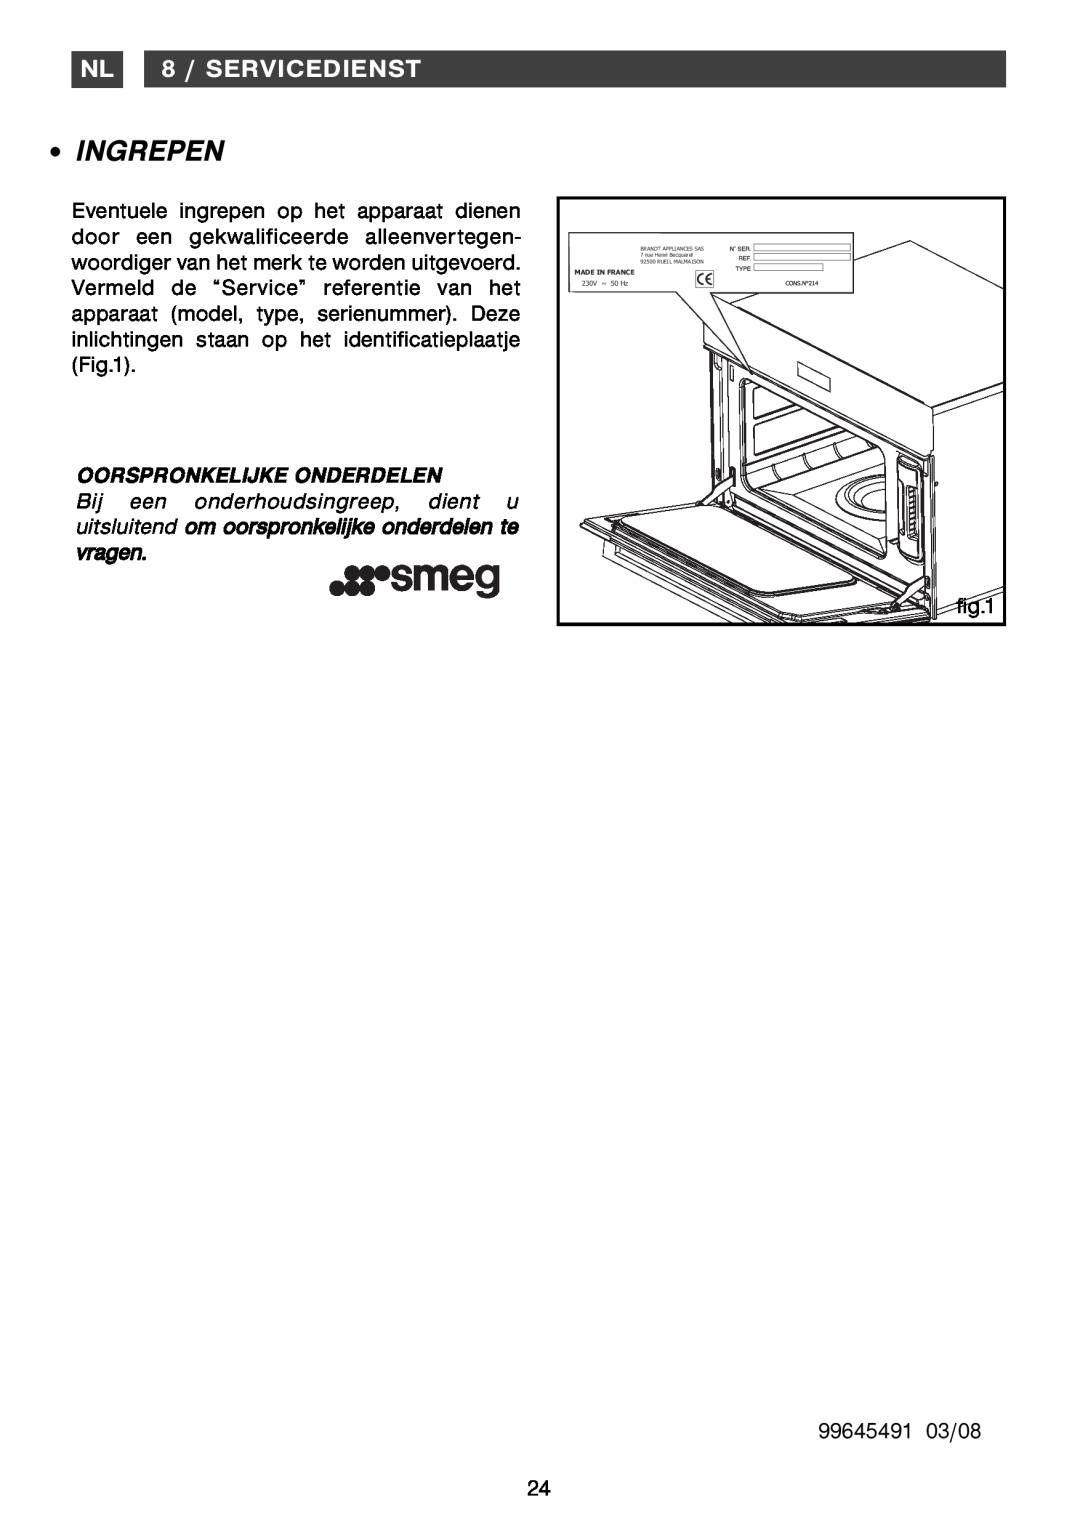 Smeg Four Oven manual Ingrepen, NL 8 / SERVICEDIENST 